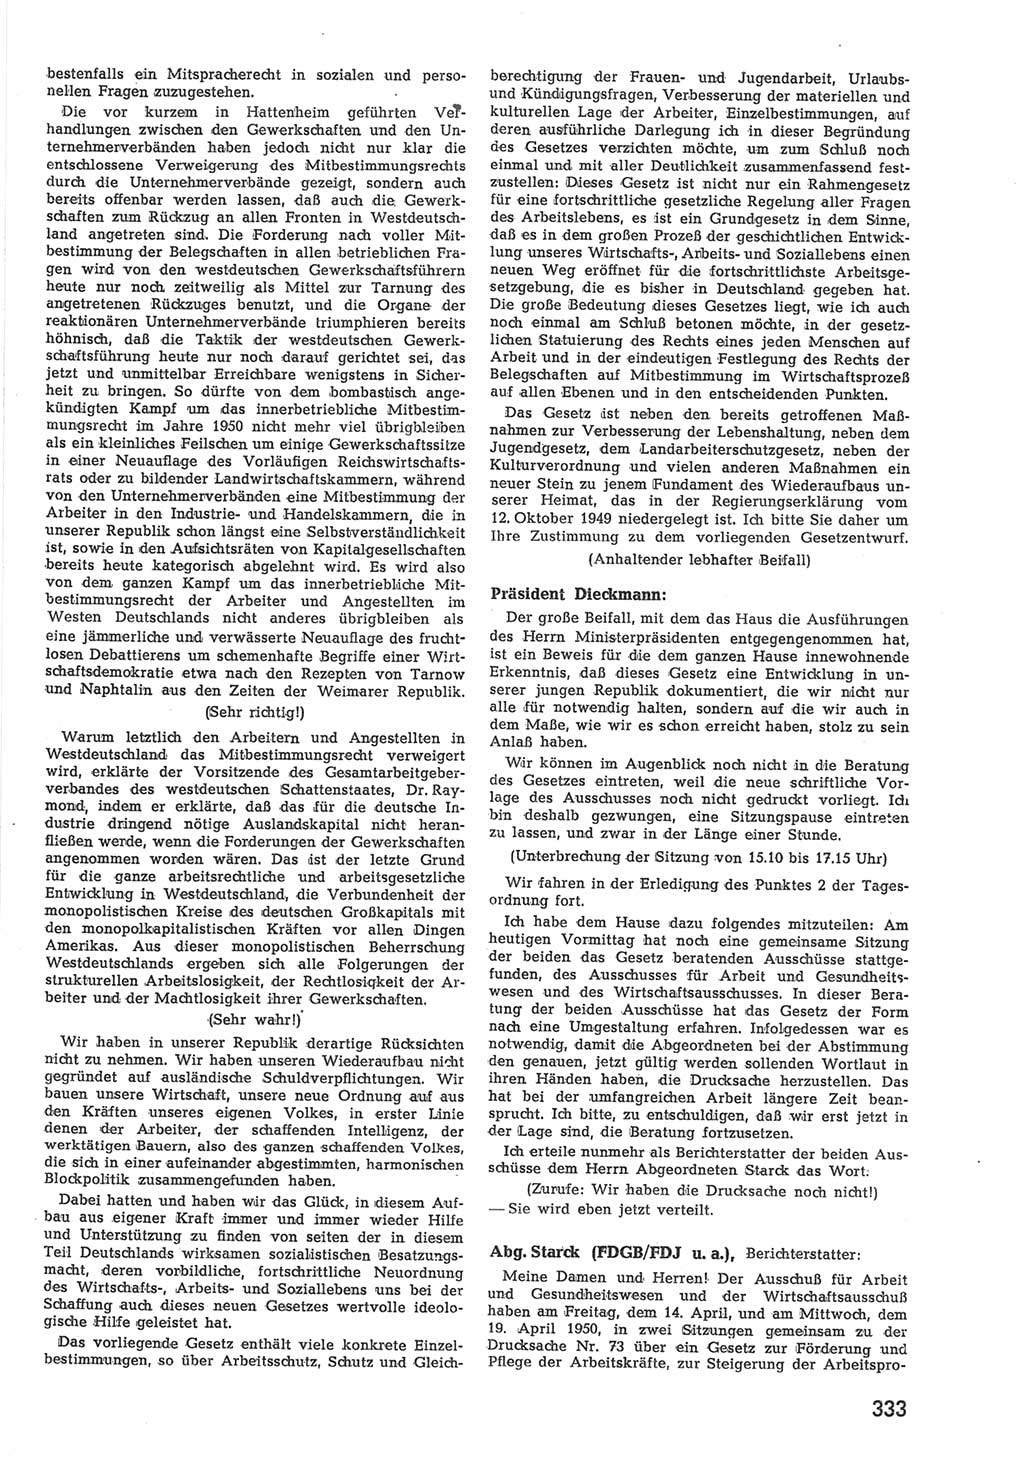 Provisorische Volkskammer (VK) der Deutschen Demokratischen Republik (DDR) 1949-1950, Dokument 347 (Prov. VK DDR 1949-1950, Dok. 347)